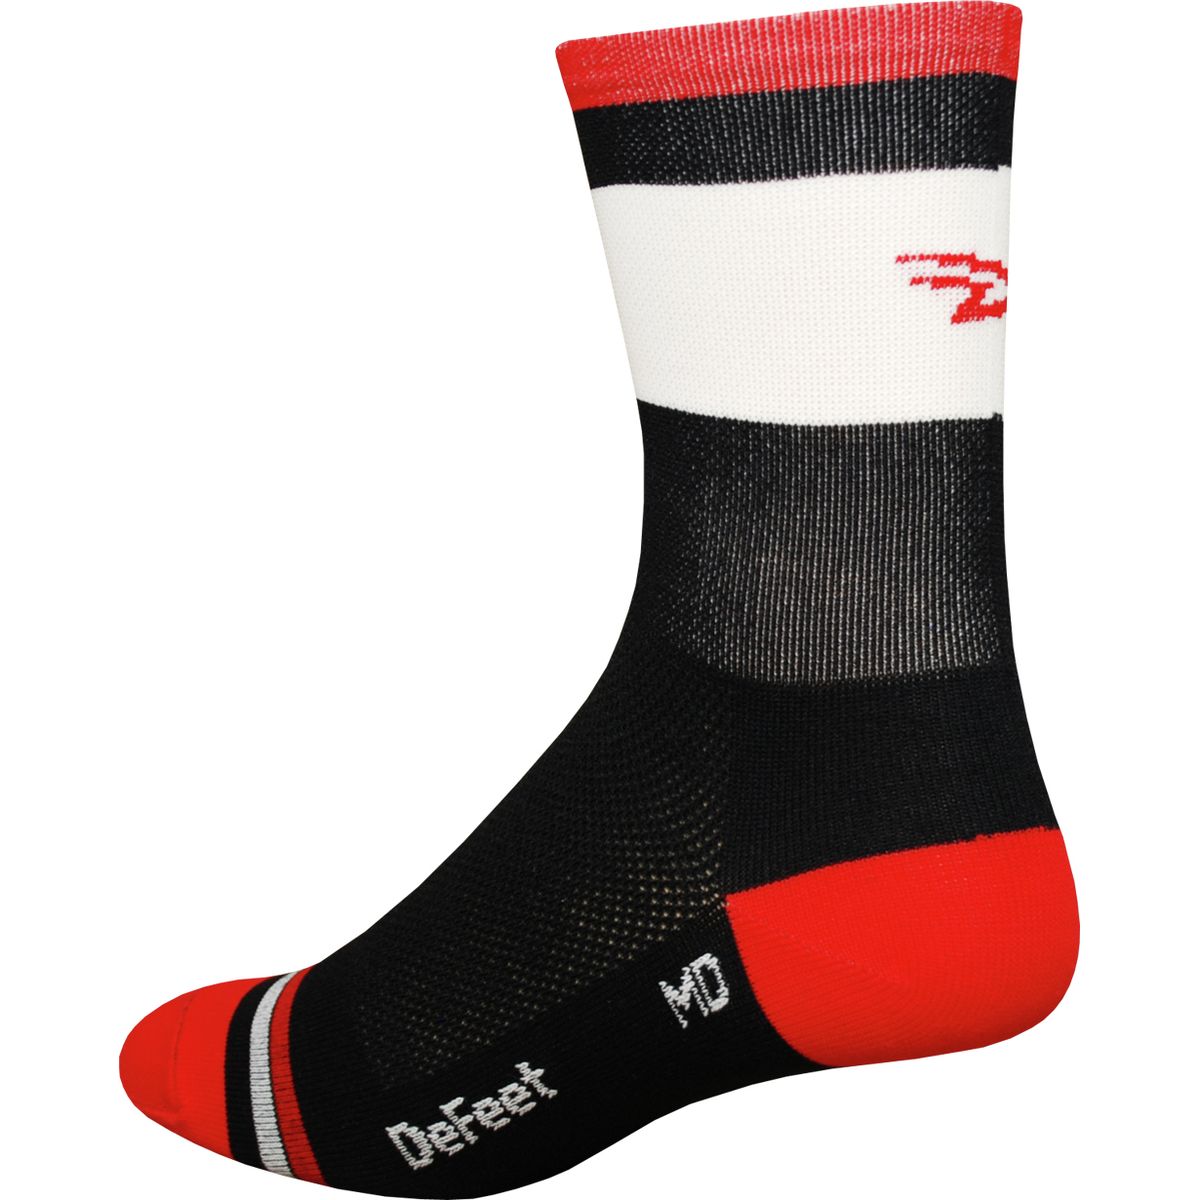 DeFeet Aireator Grupetta Hi Top 5in Sock Men's